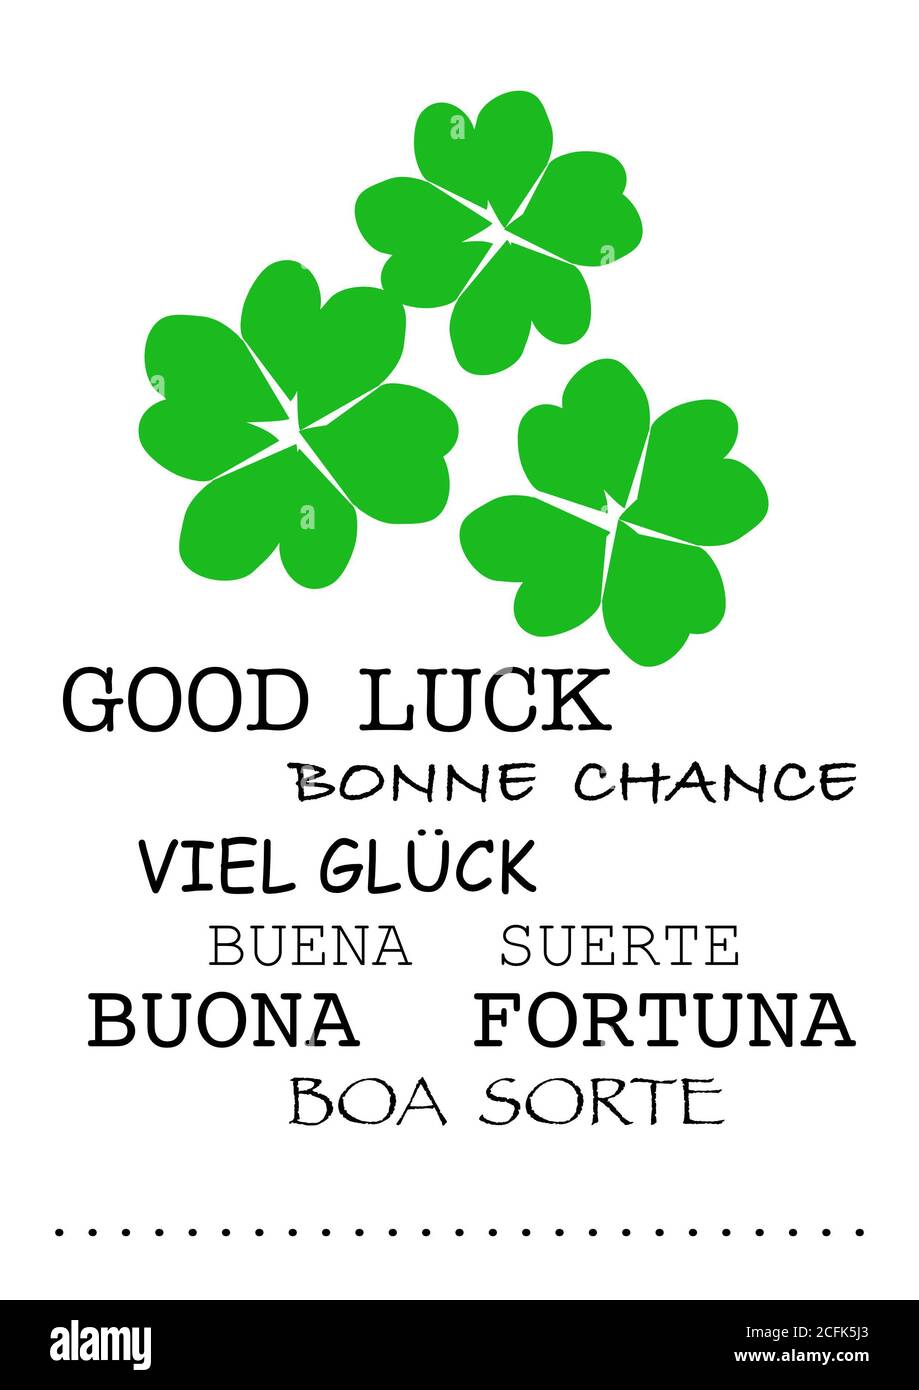 Drei grüne vier Blatt Kleeblätter auf weißem Hintergrund, handgezeichnet, kreativ, viel Glück Text in internationalen Sprachen Stockfoto